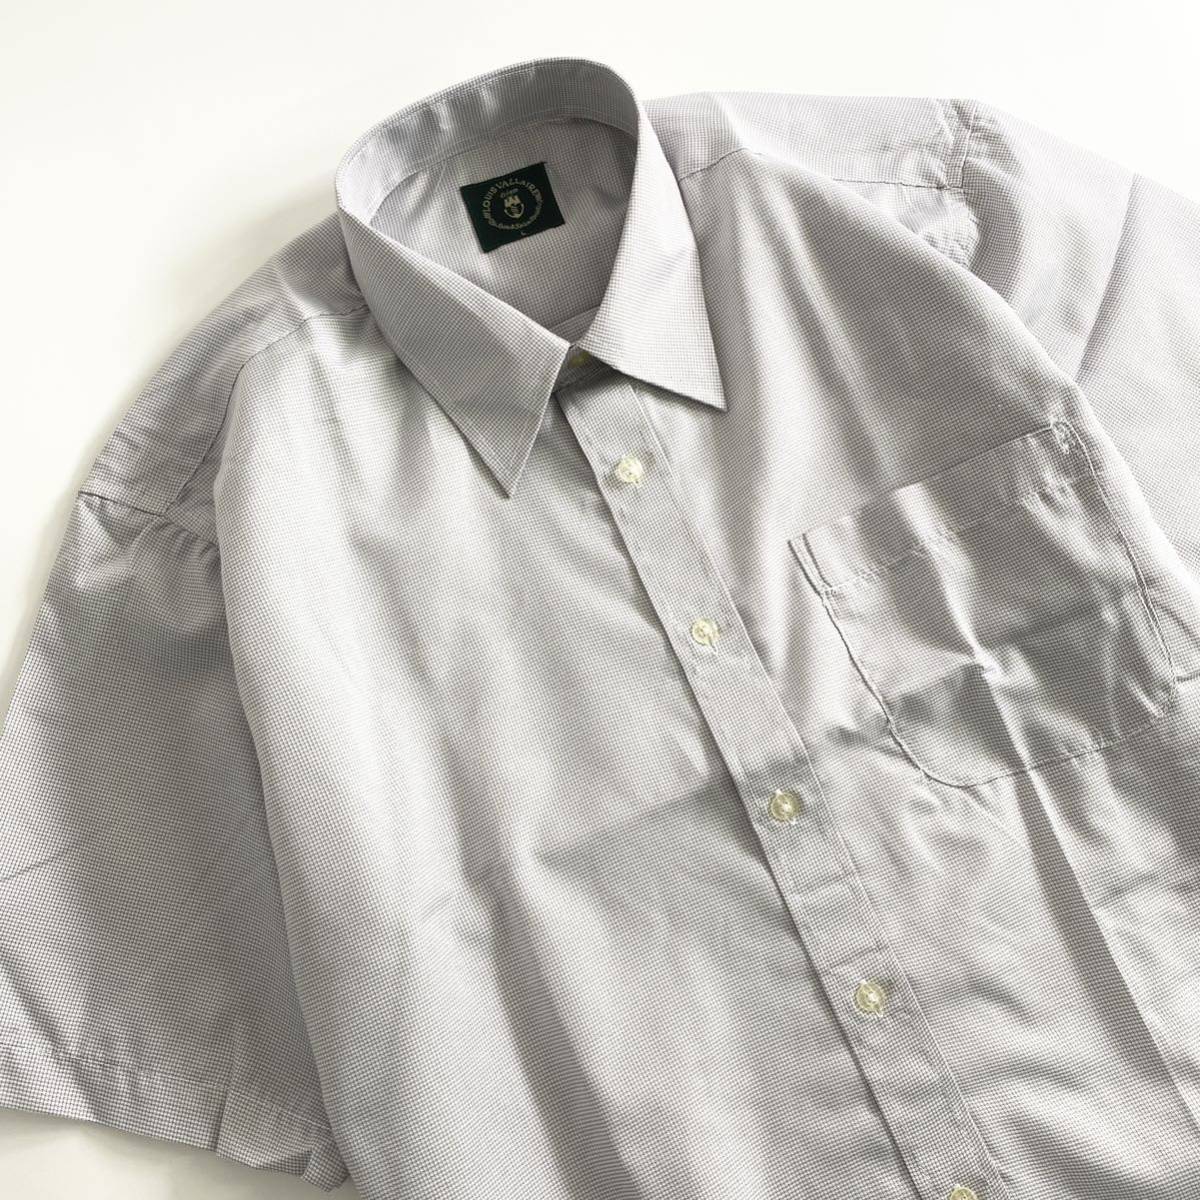 Gb1 LOUIS VALLAIRE 半袖シャツ サイズL メンズ ワイシャツ カッターシャツ ビジネスシャツ 胸ポケット ショートスリーブ トップス 薄手_画像3